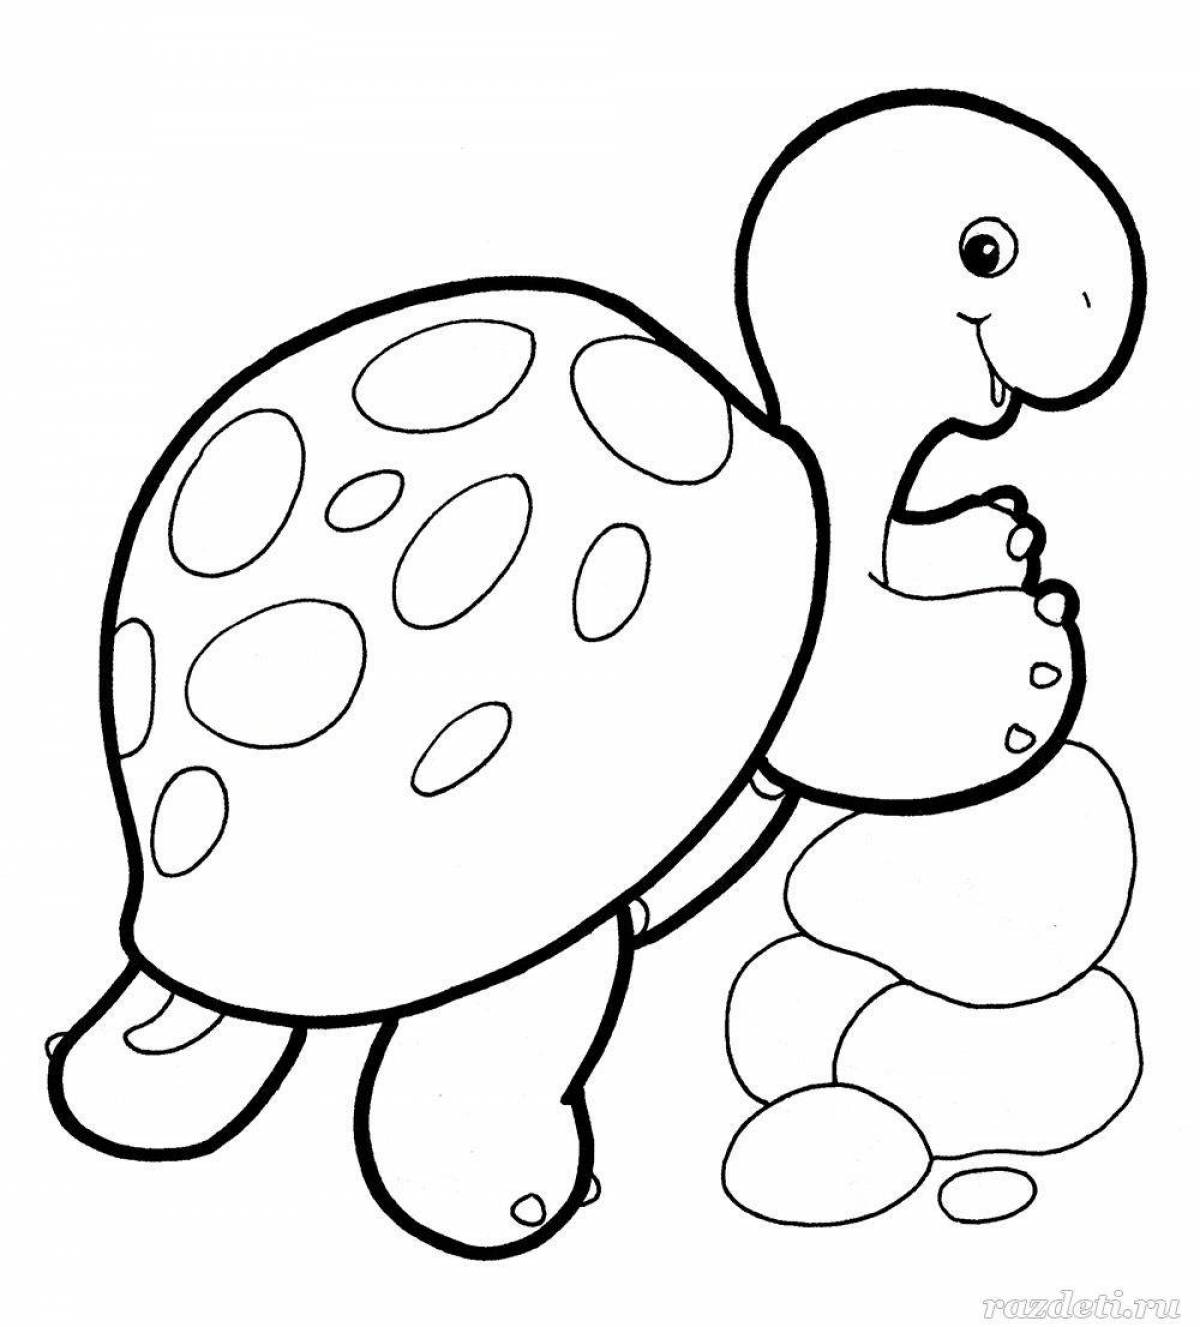 Милая черепаха-раскраска для детей